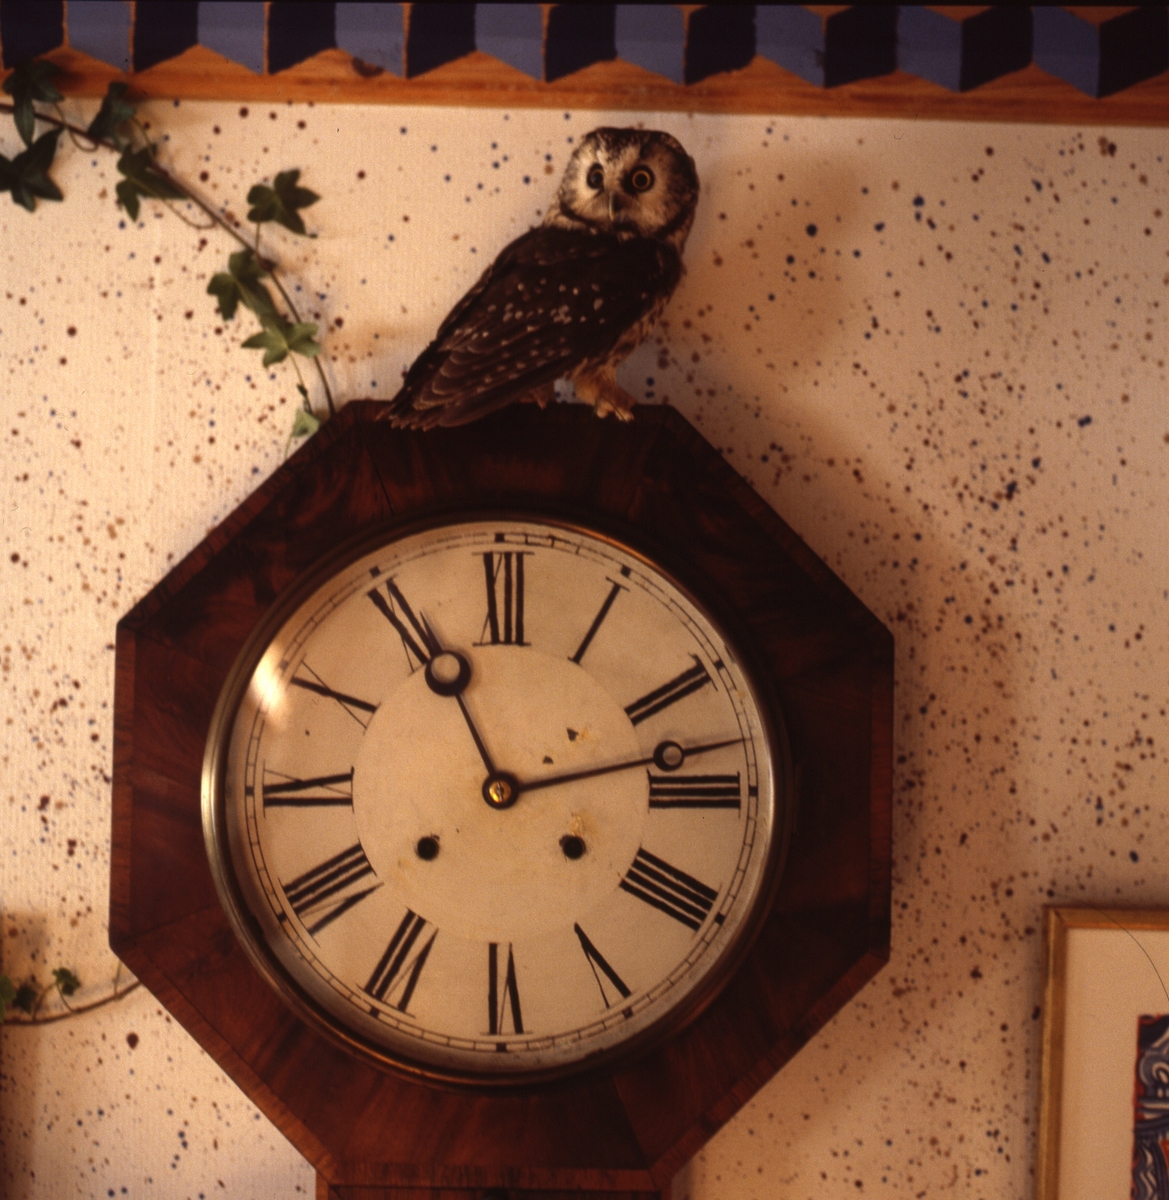 Pärluggla som sitter på ett väggur i köket, Sunnanåker februari 1987.